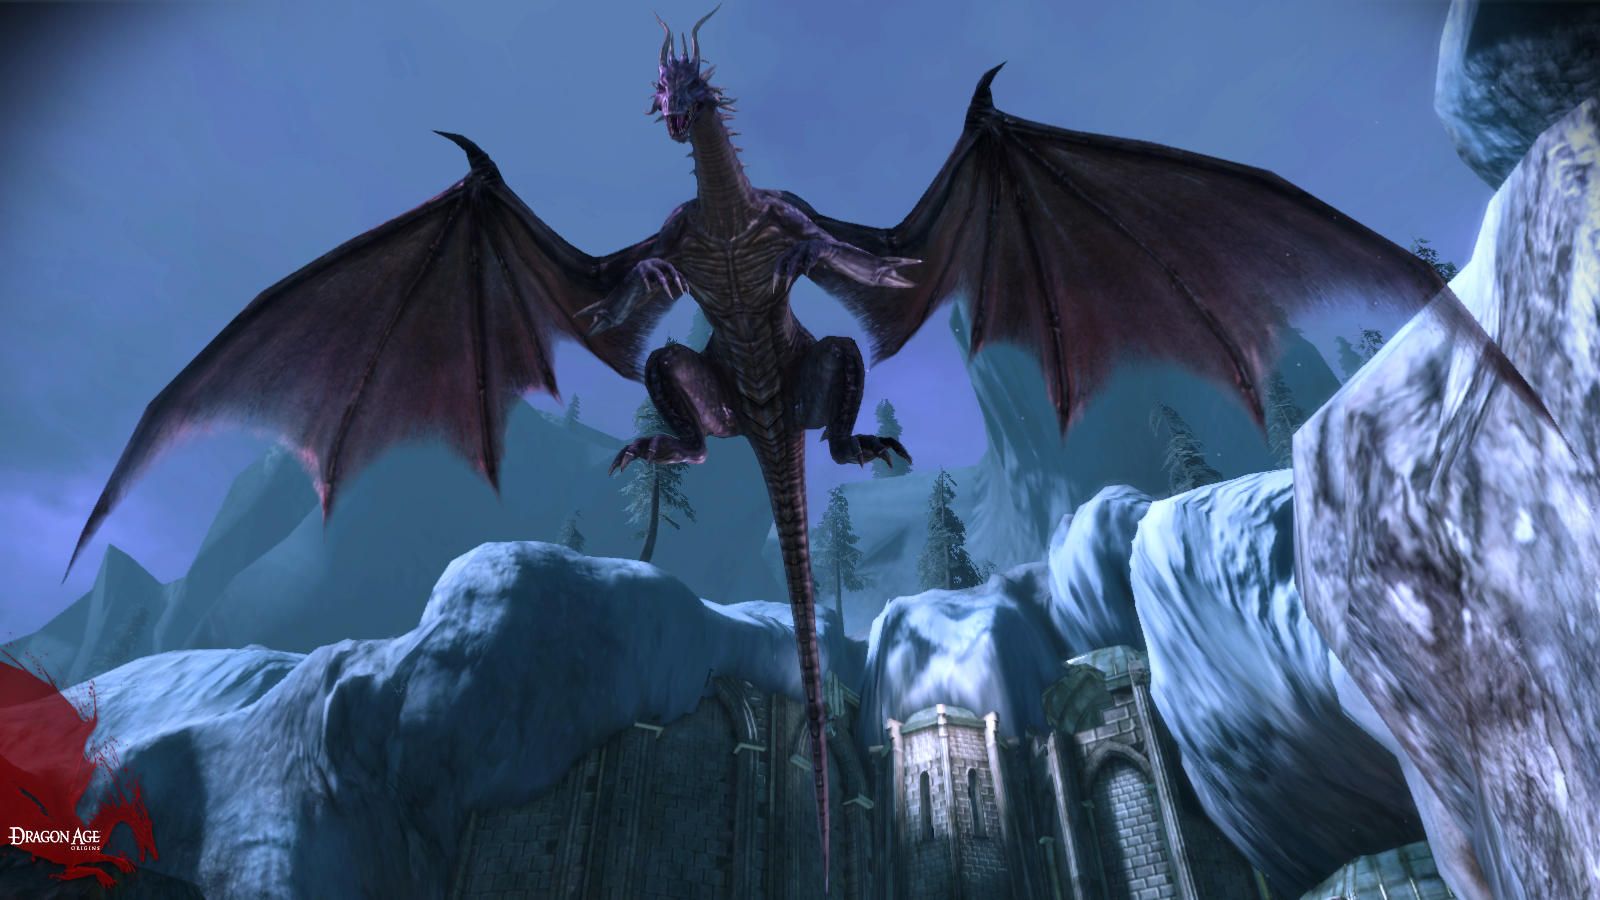 Fondos de Pantalla Dragon Age Juegos descargar imagenes